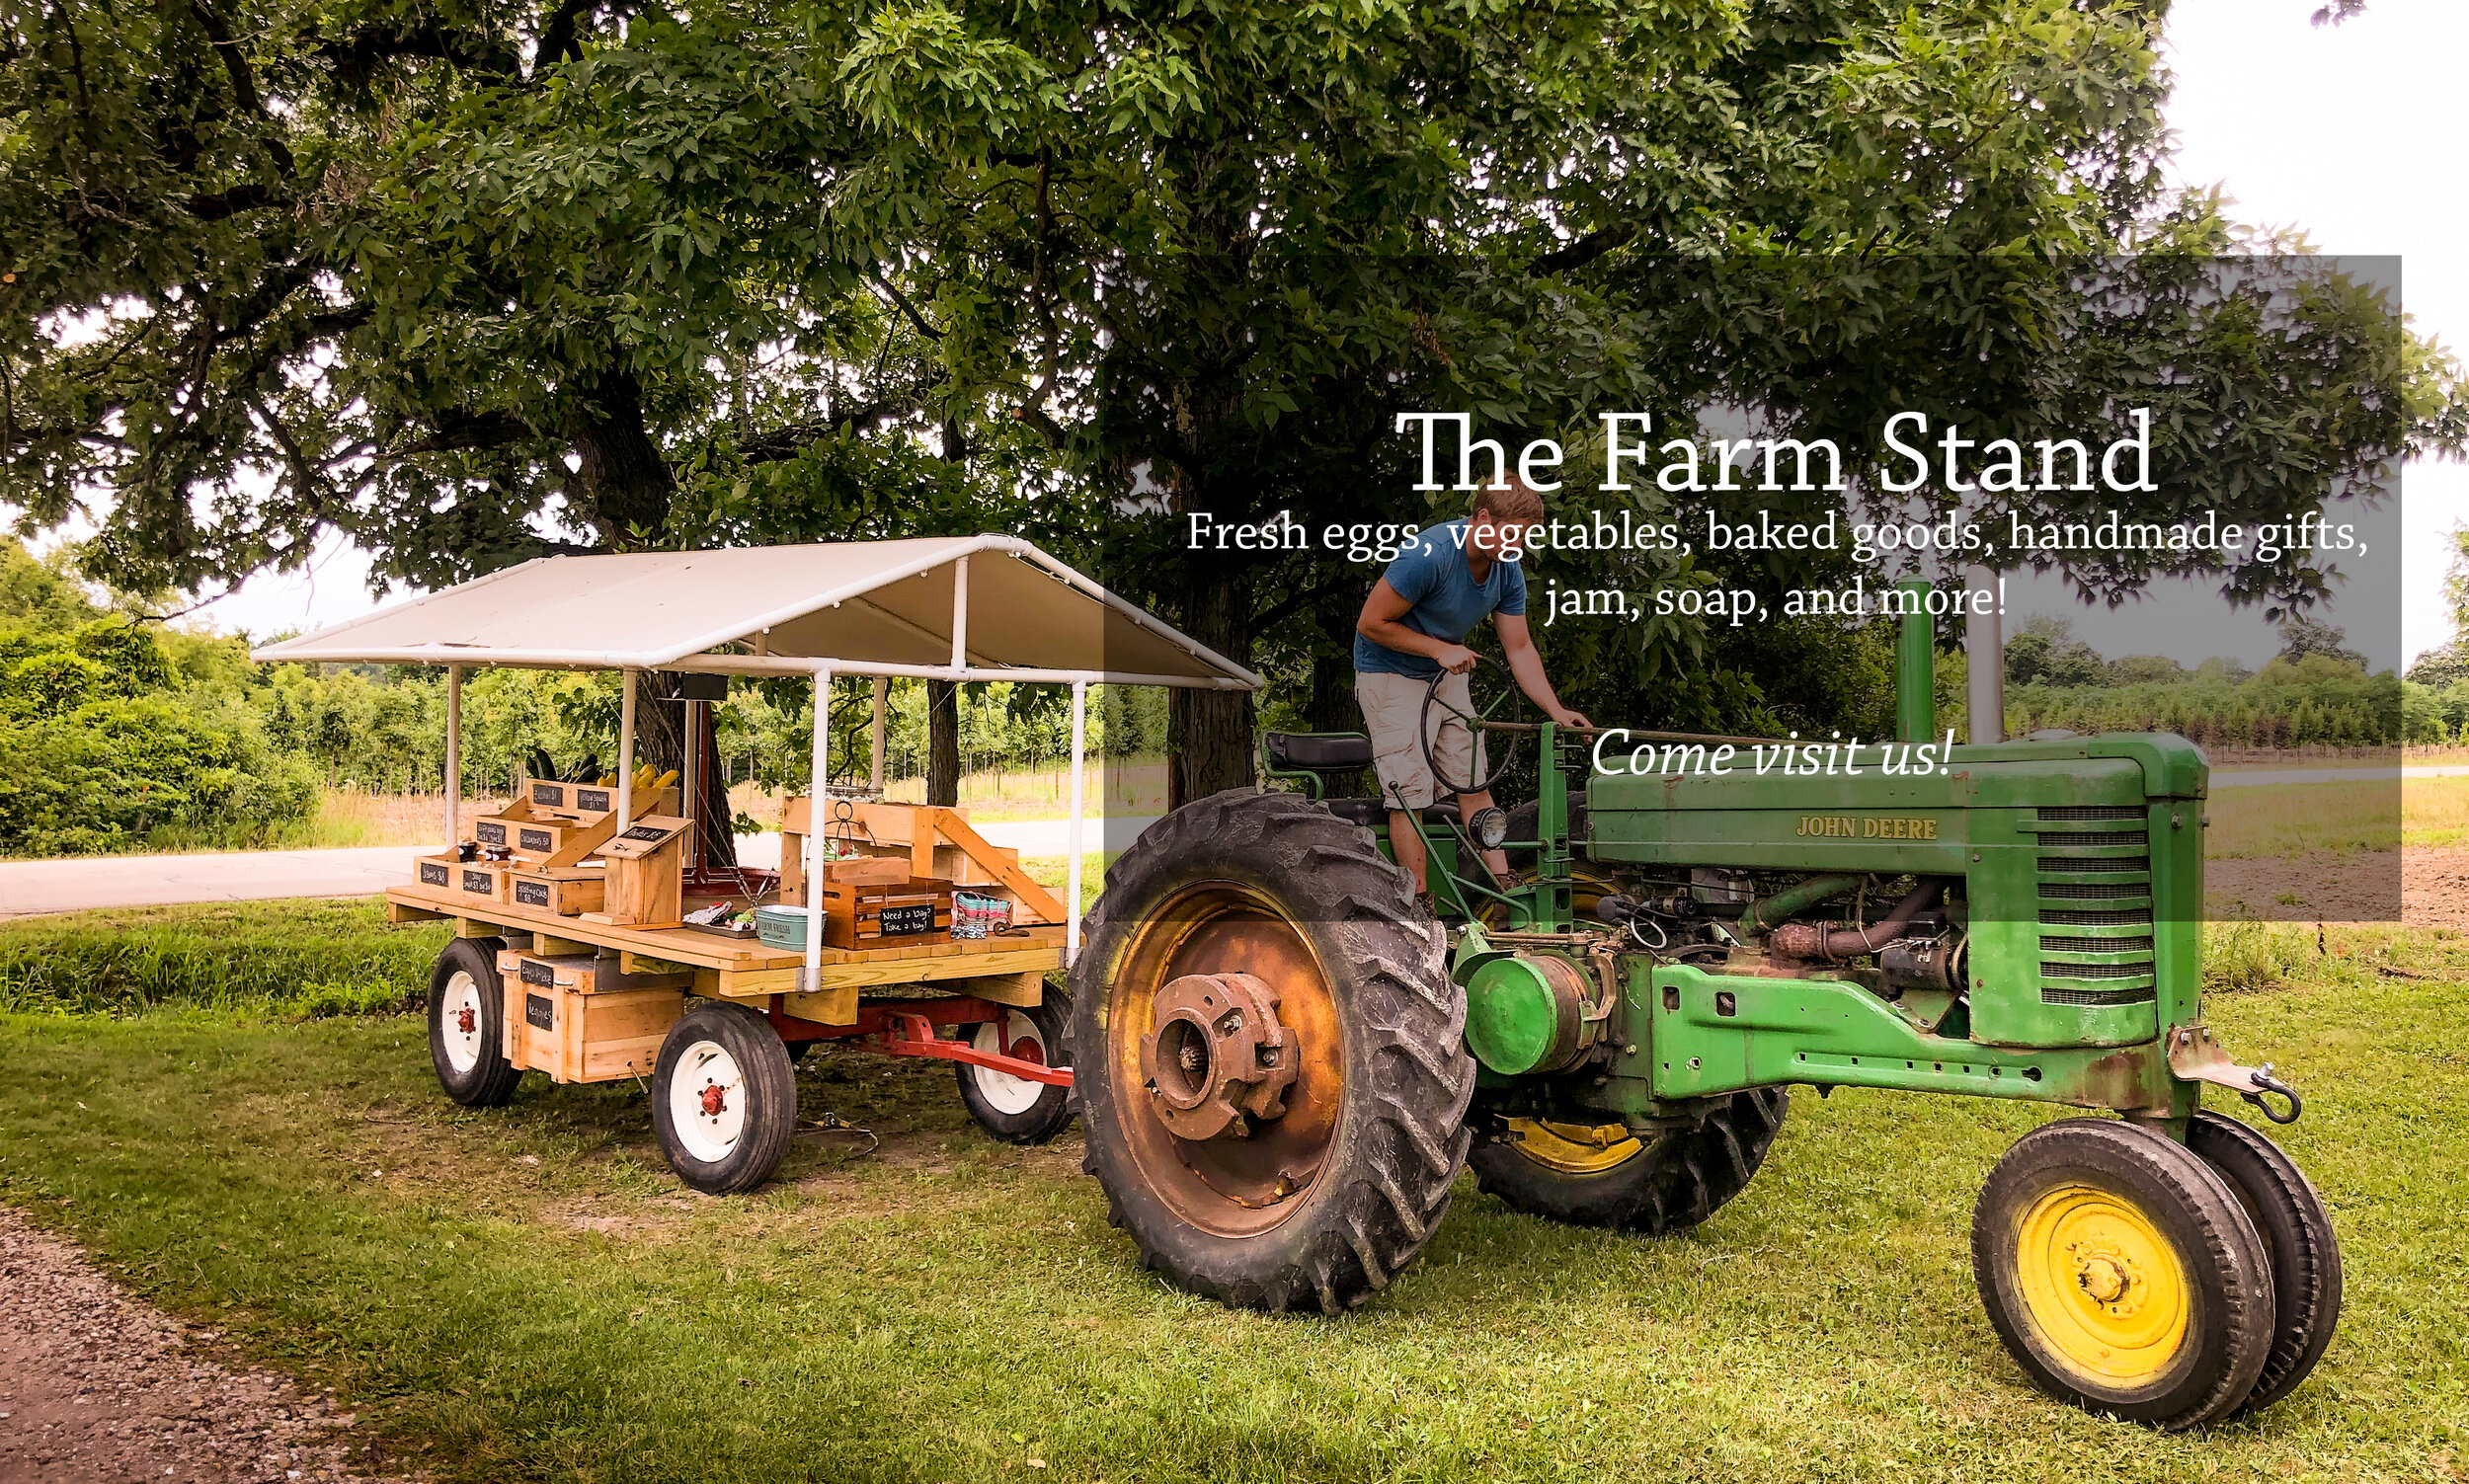 Farm Stand Cover Photo.jpg